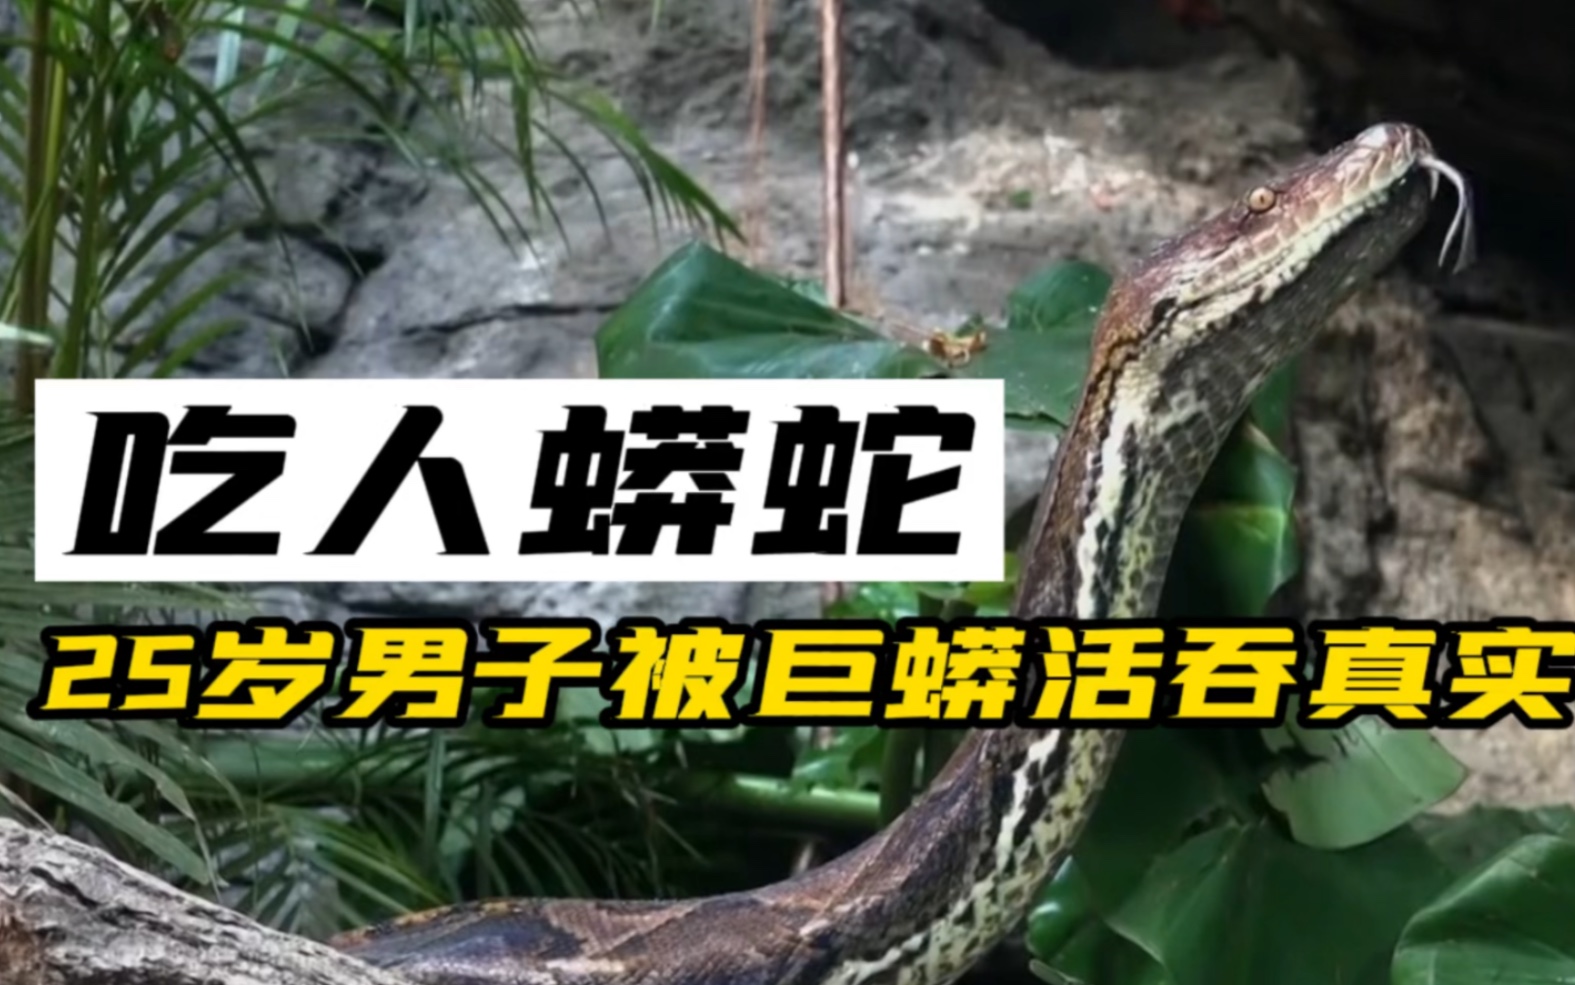 越南大蟒蛇事件图片